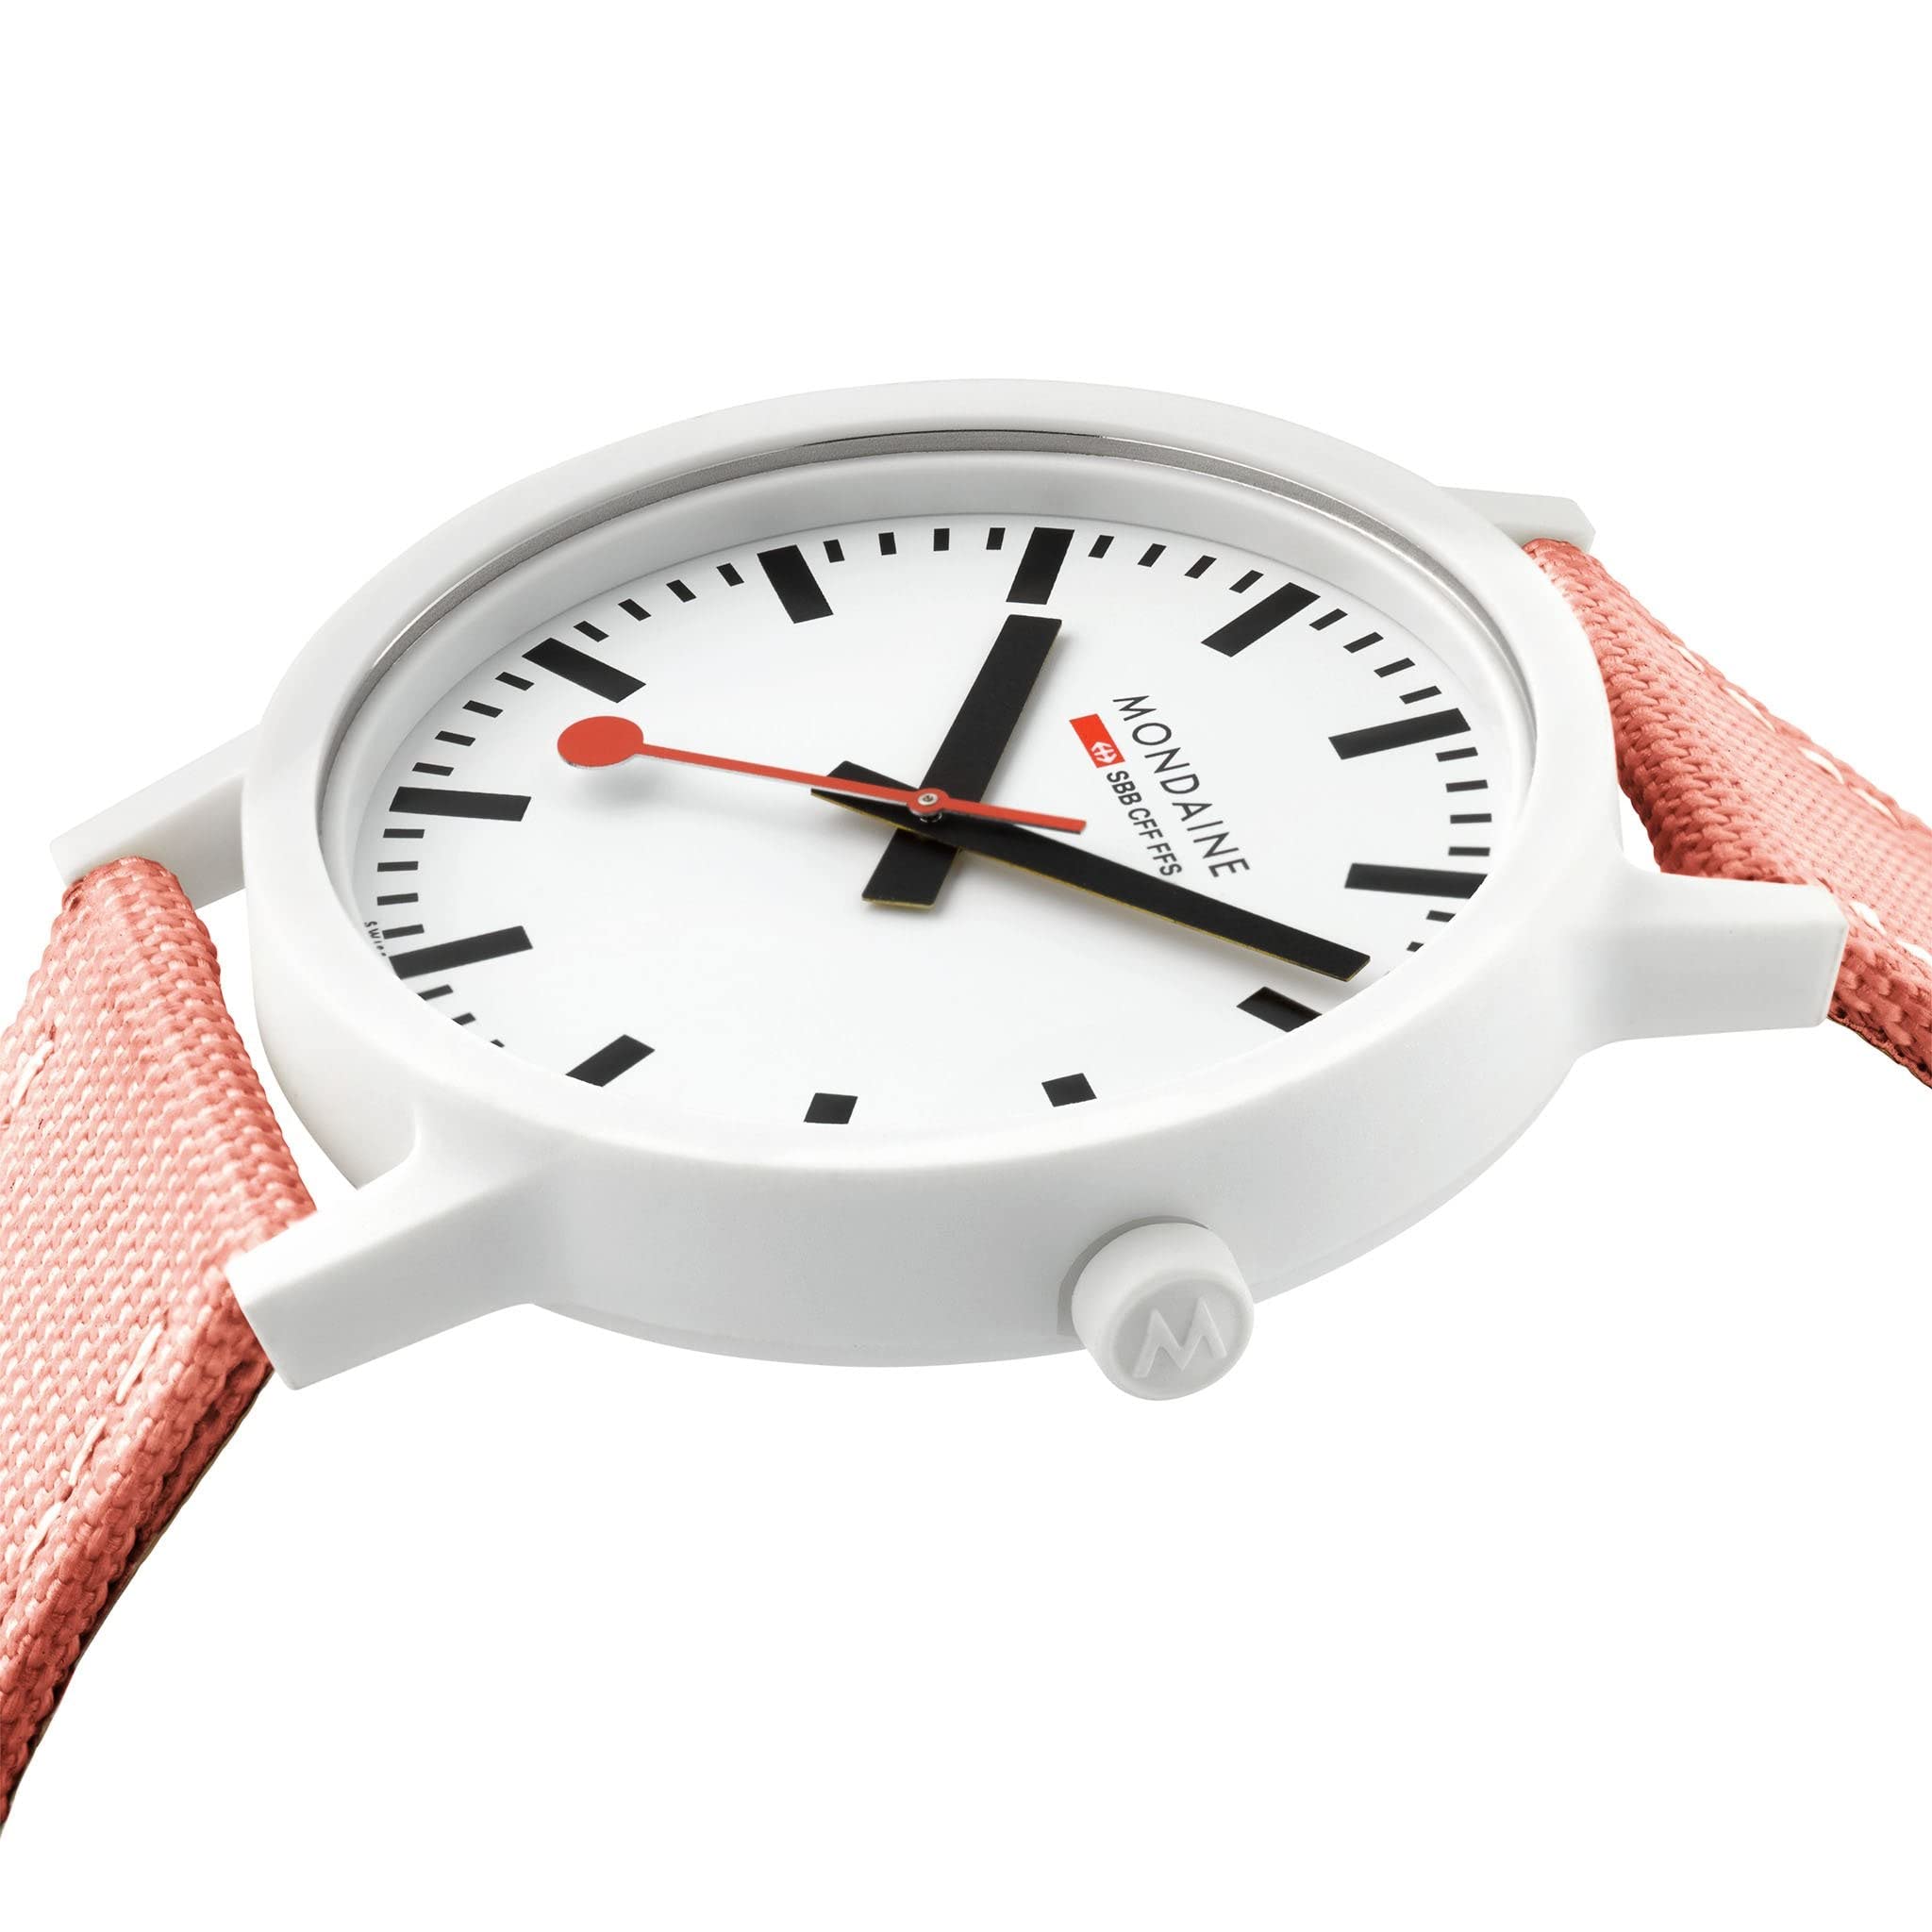 Mondaine Official Swiss Railways Watch Essence | White/Pink Suede